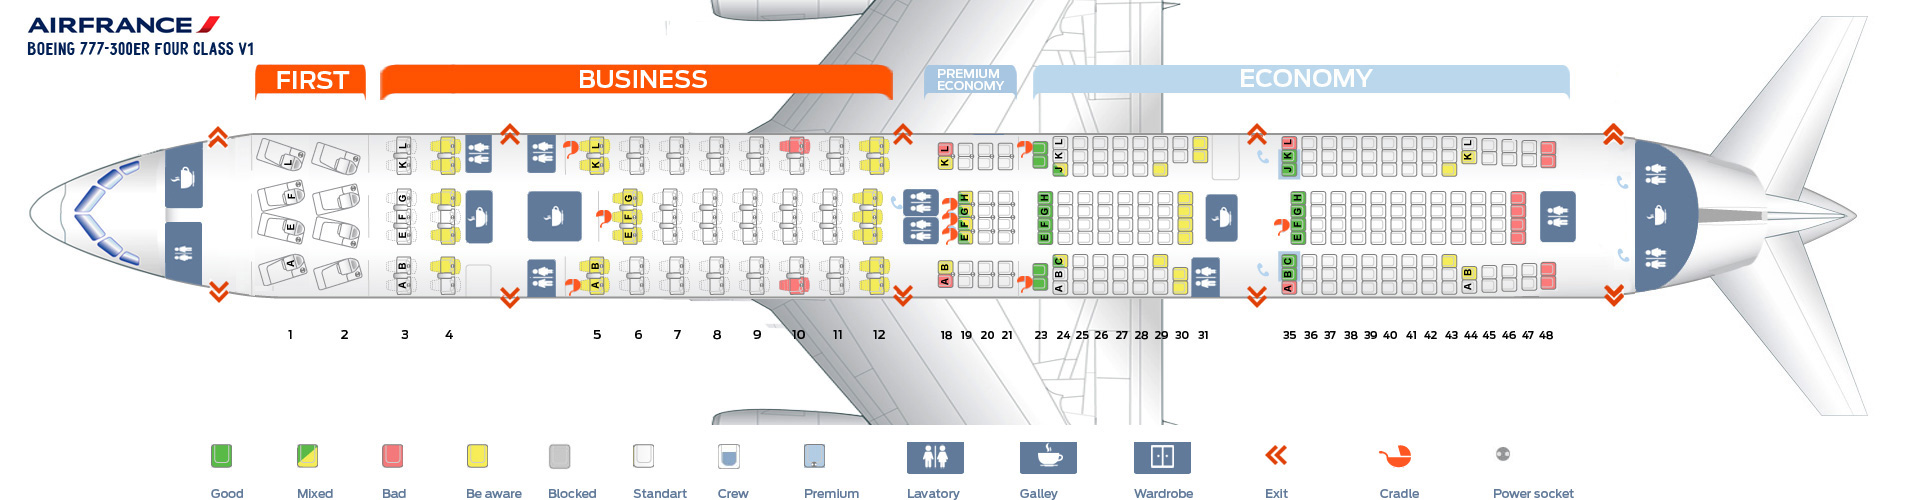 Схема расположения кресел в самолете боинг 777 300